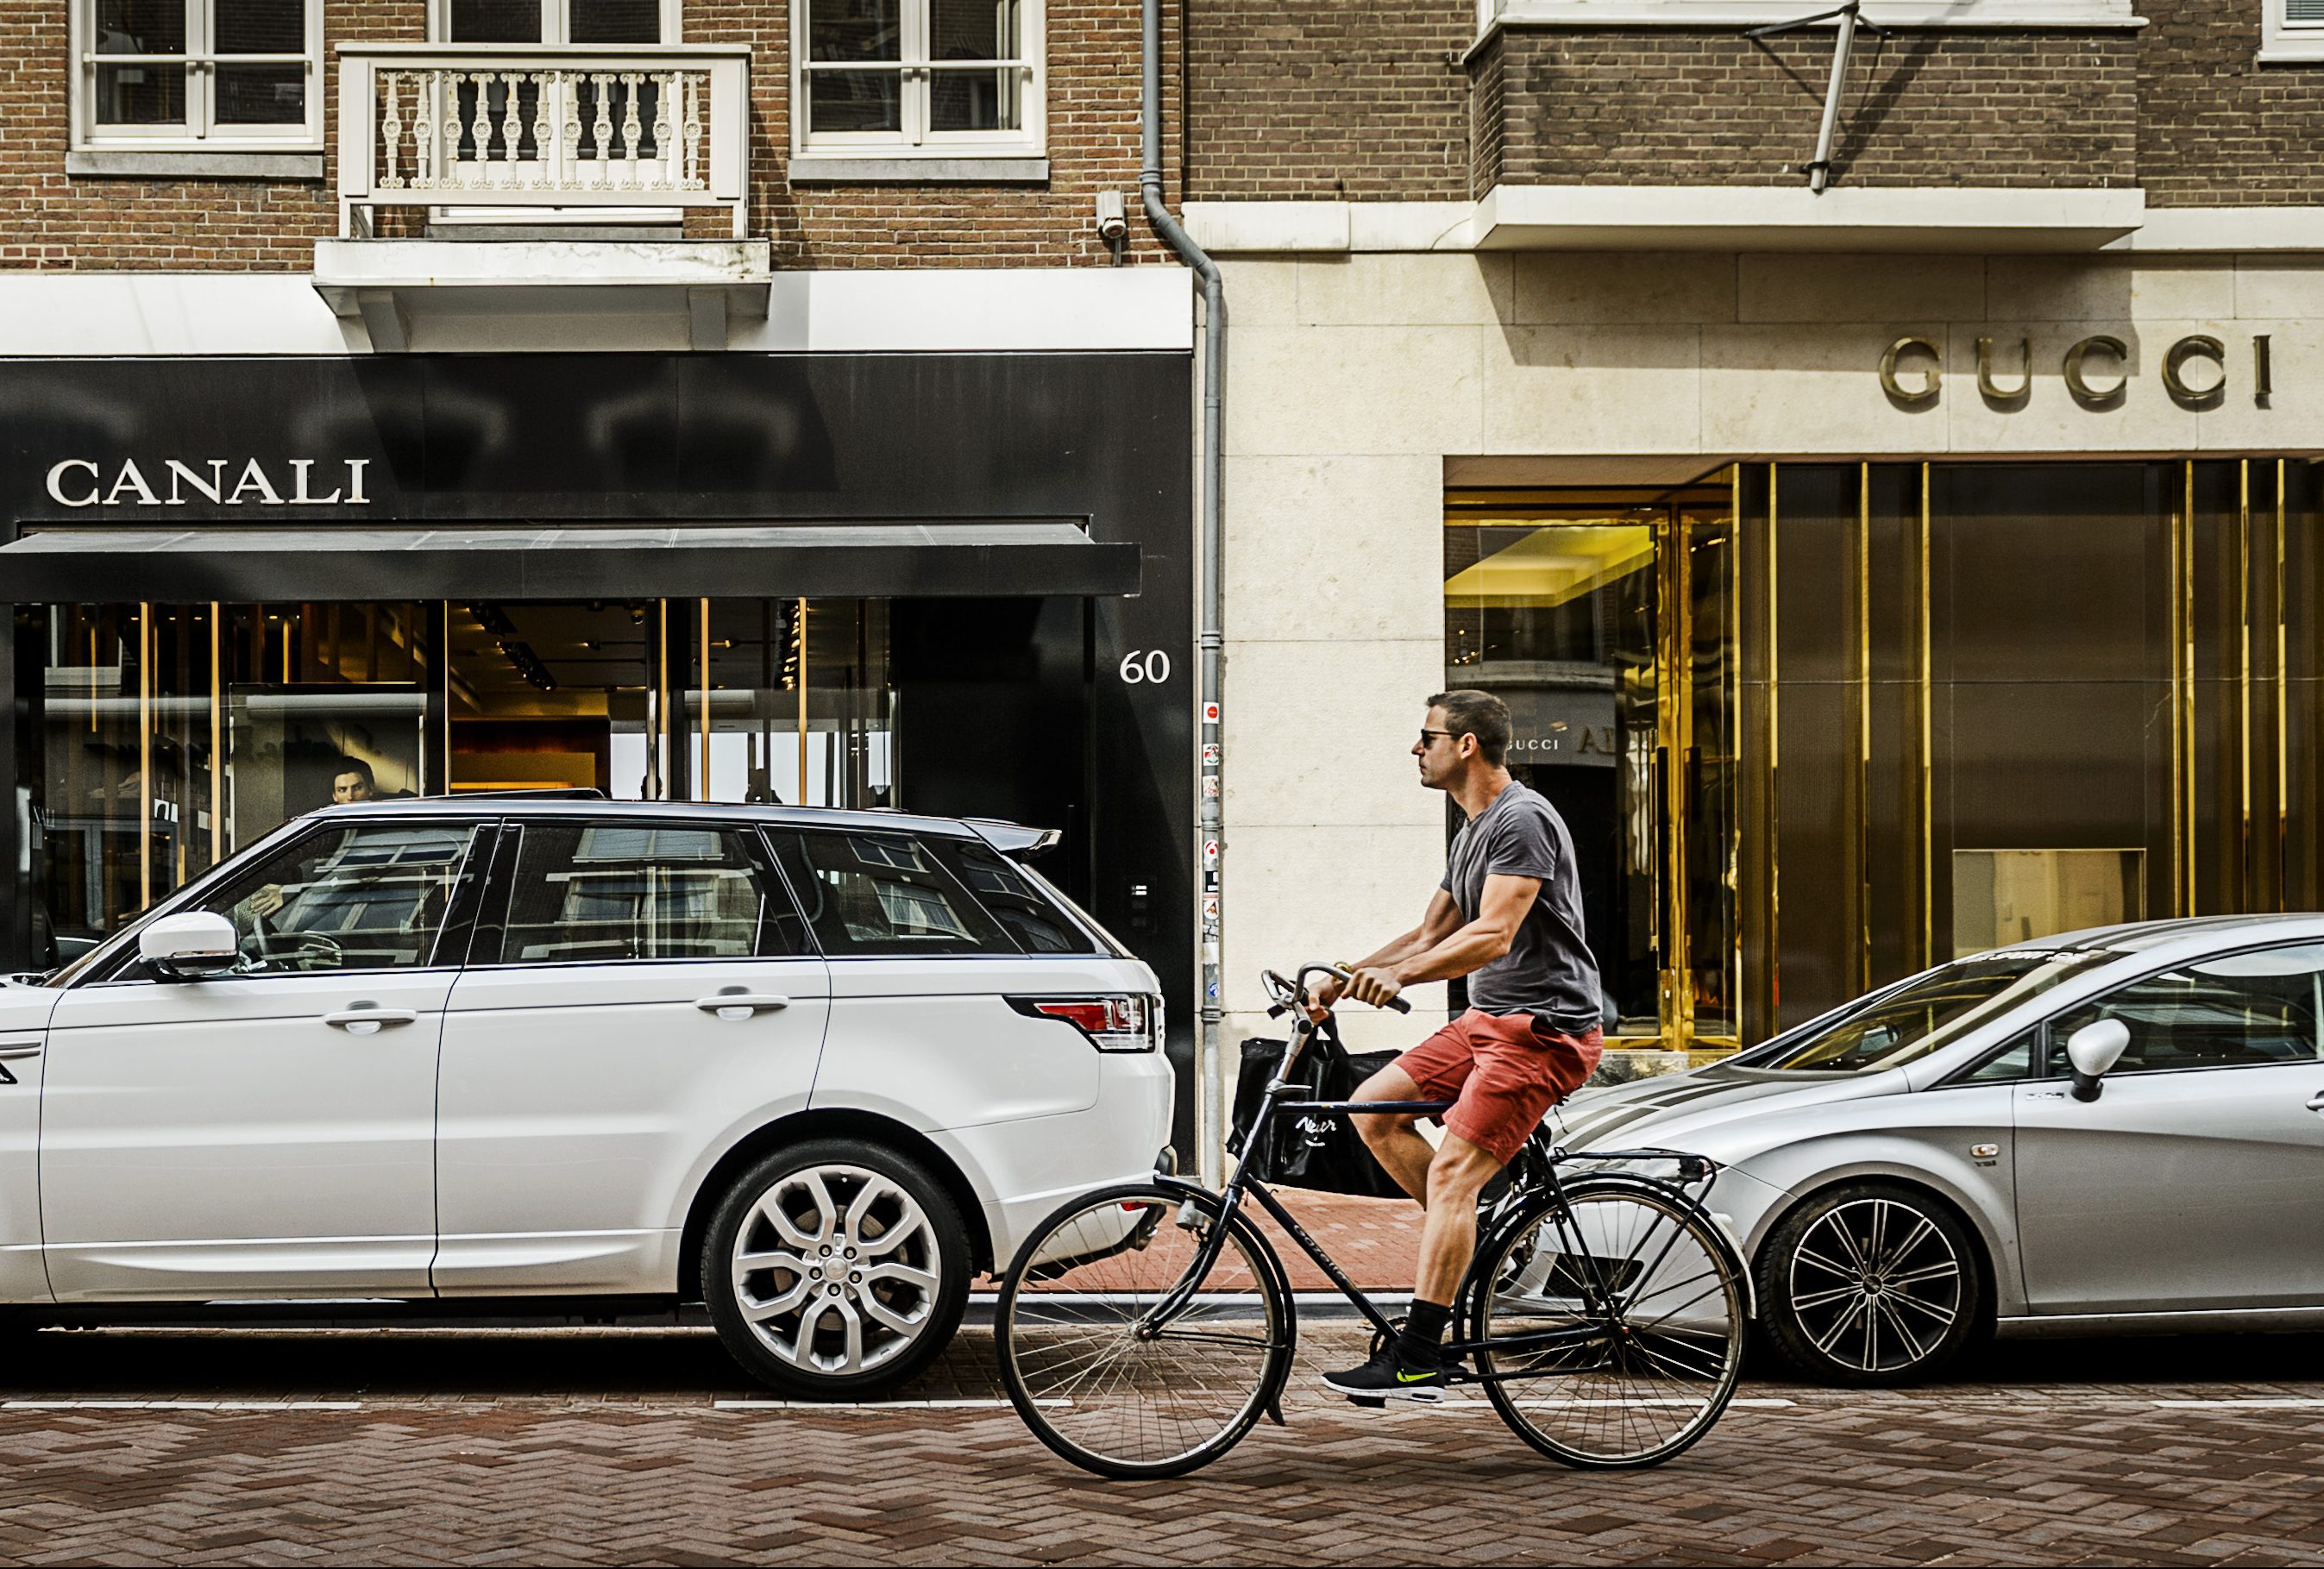 2015-09-01 13:36:36 AMSTERDAM - De duurste straat van Nederland, de P.C. Hooftstraat, heeft een opknapbeurt van 1,8 miljoen euro gekregen. Het doel van de aanpak is om de verkeersveiligheid in de straat voor alle gebruikers te verbeteren. ANP REMKO DE WAAL